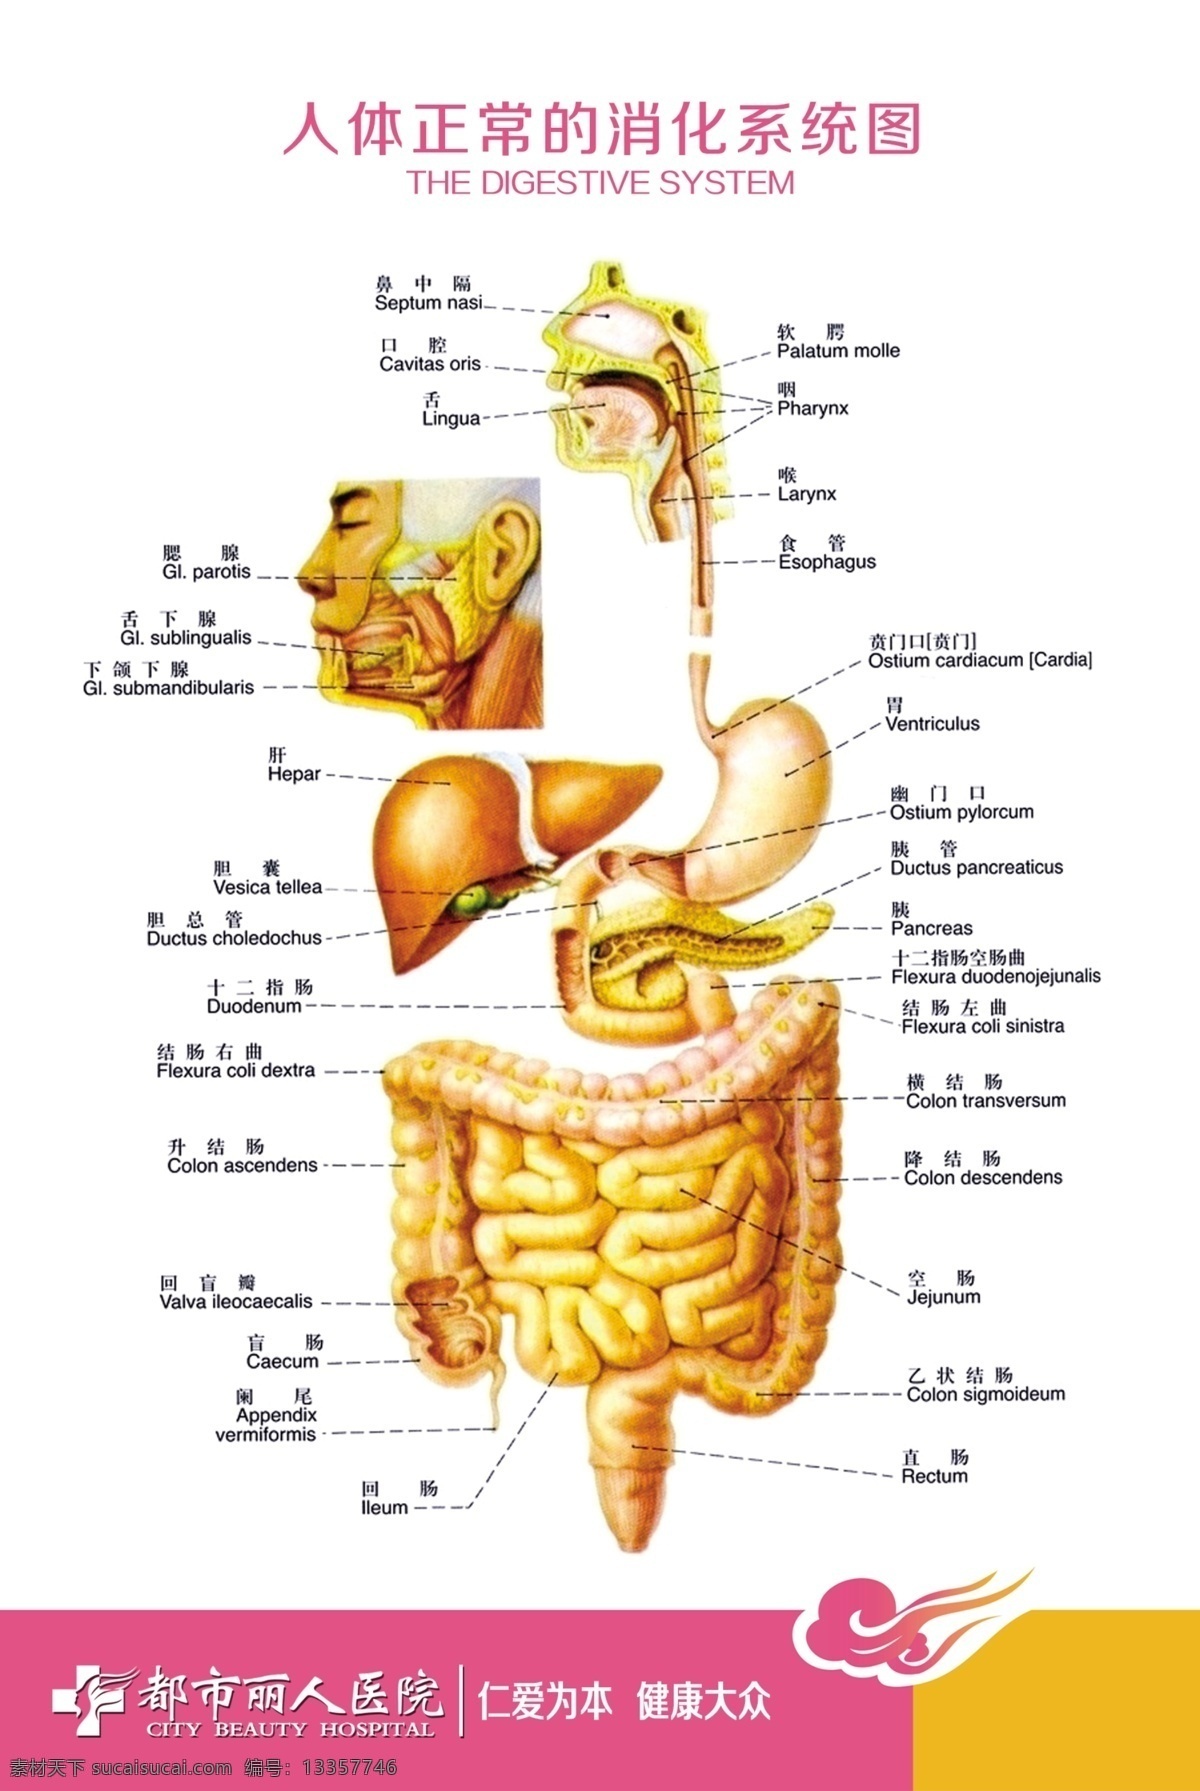 人体 消化系统 展板 图 正常 消化系统图 消化系统展板 白色